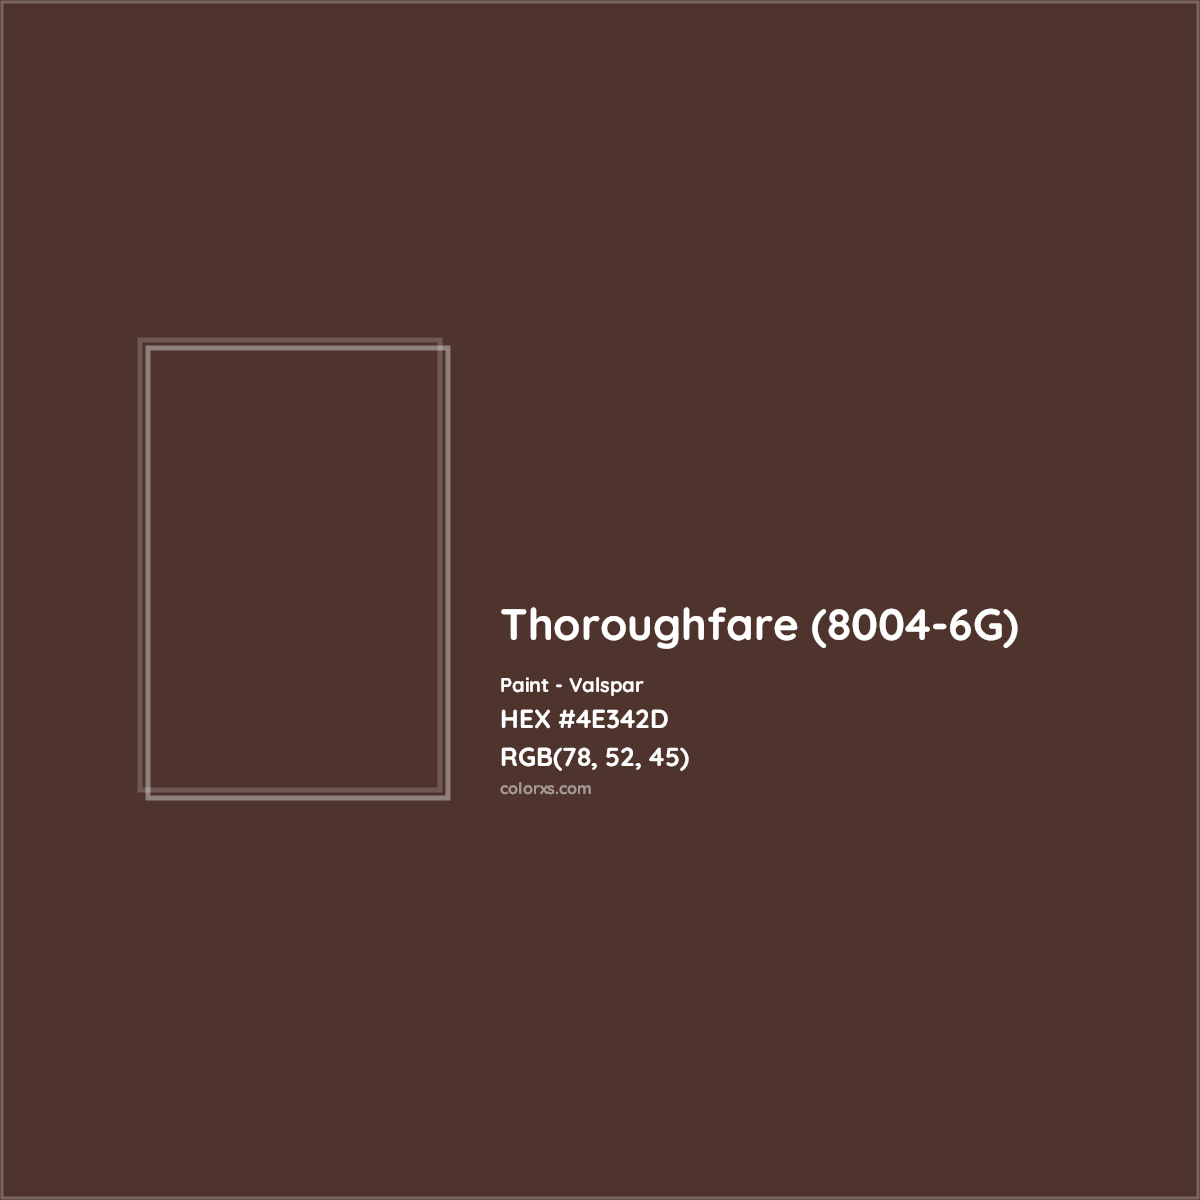 HEX #4E342D Thoroughfare (8004-6G) Paint Valspar - Color Code